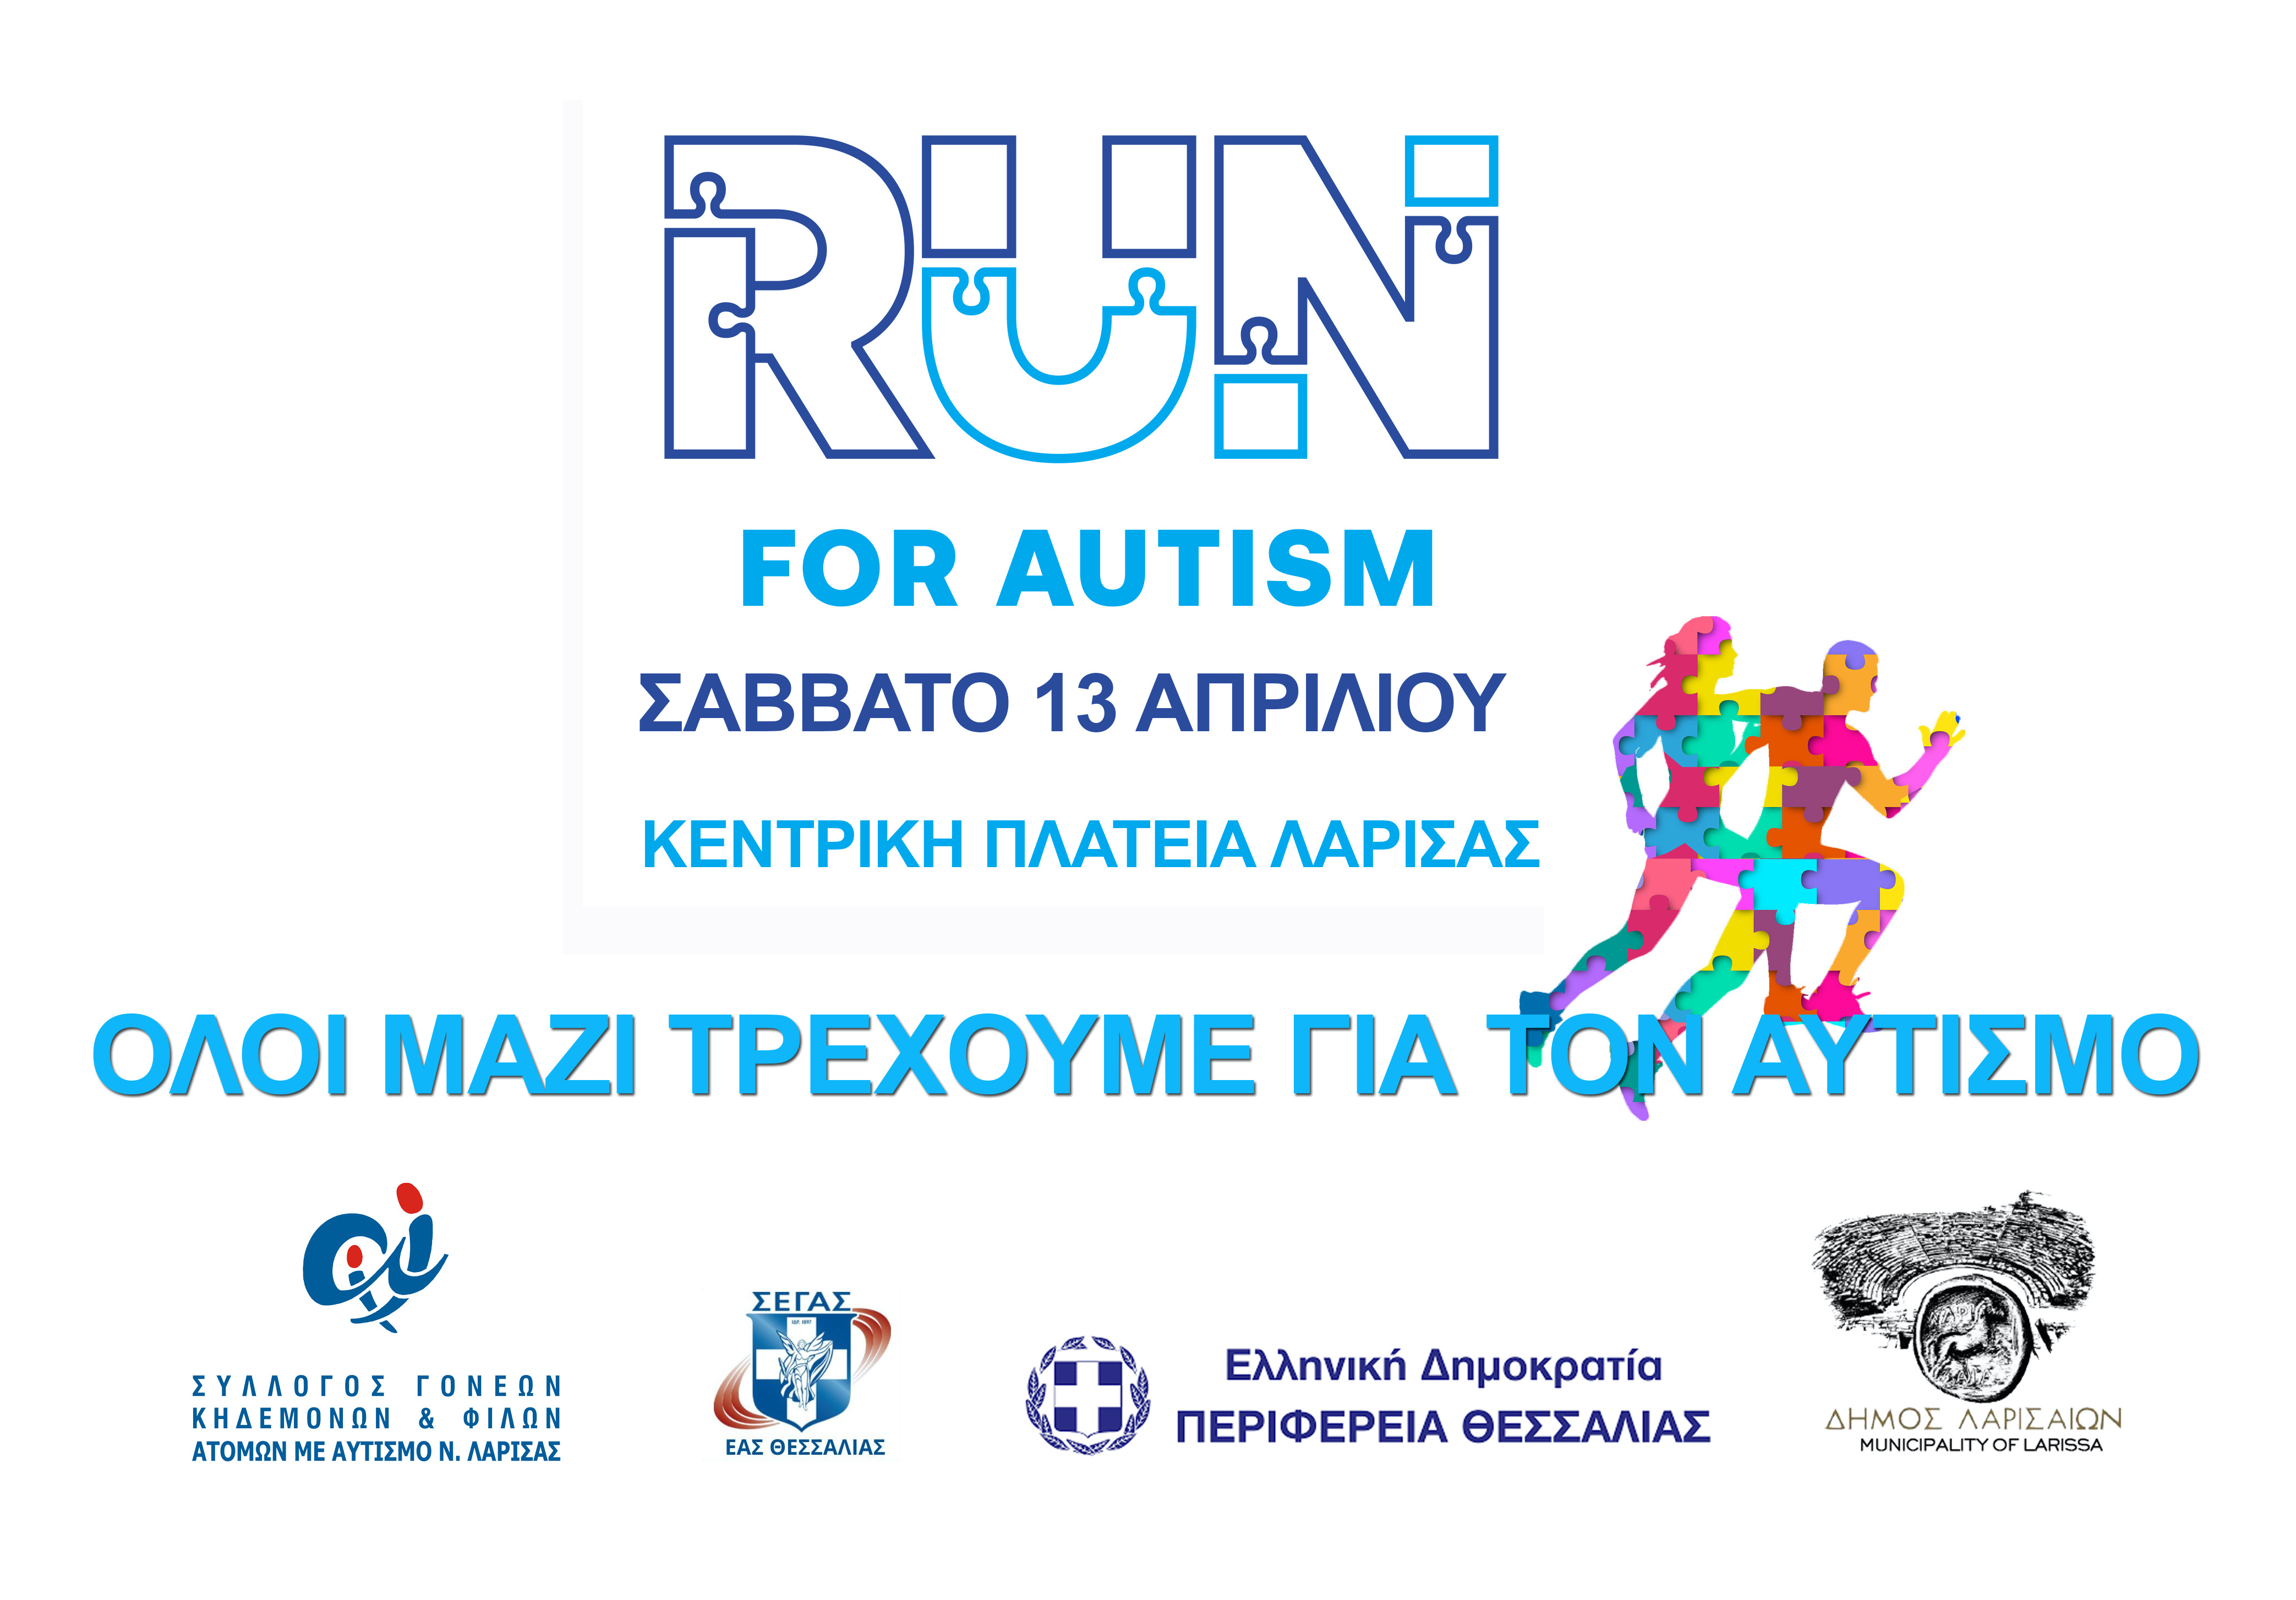 Το Σάββατο 13 Απριλίου τρέχουμε για τον αυτισμό!